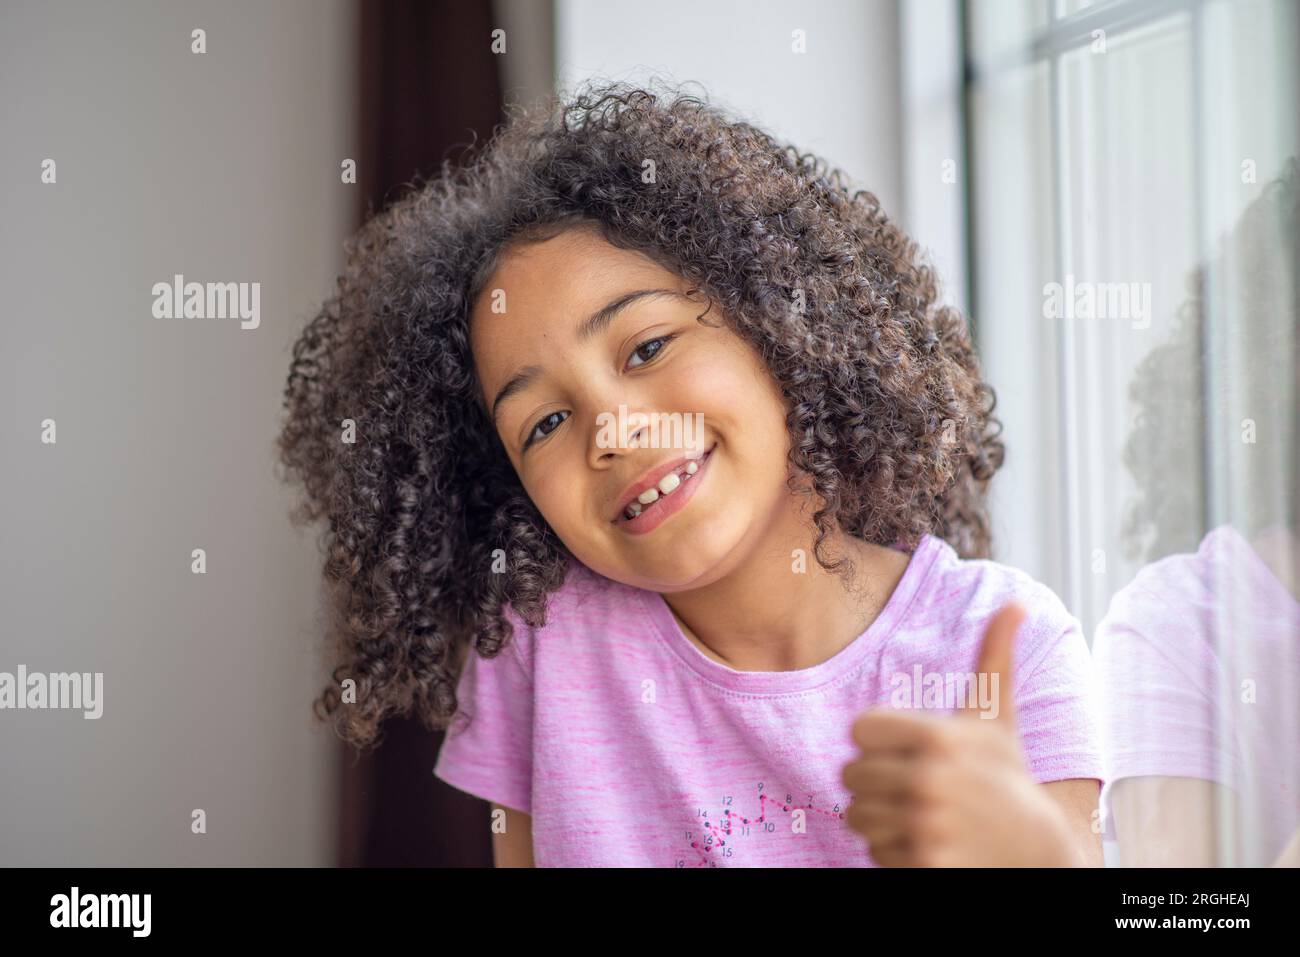 Wunderschönes kleines glückliches Mädchen, das neben dem Fenster sitzt, Nahaufnahme eines fröhlichen, lockigen Kindes, das den Daumen zeigt Stockfoto